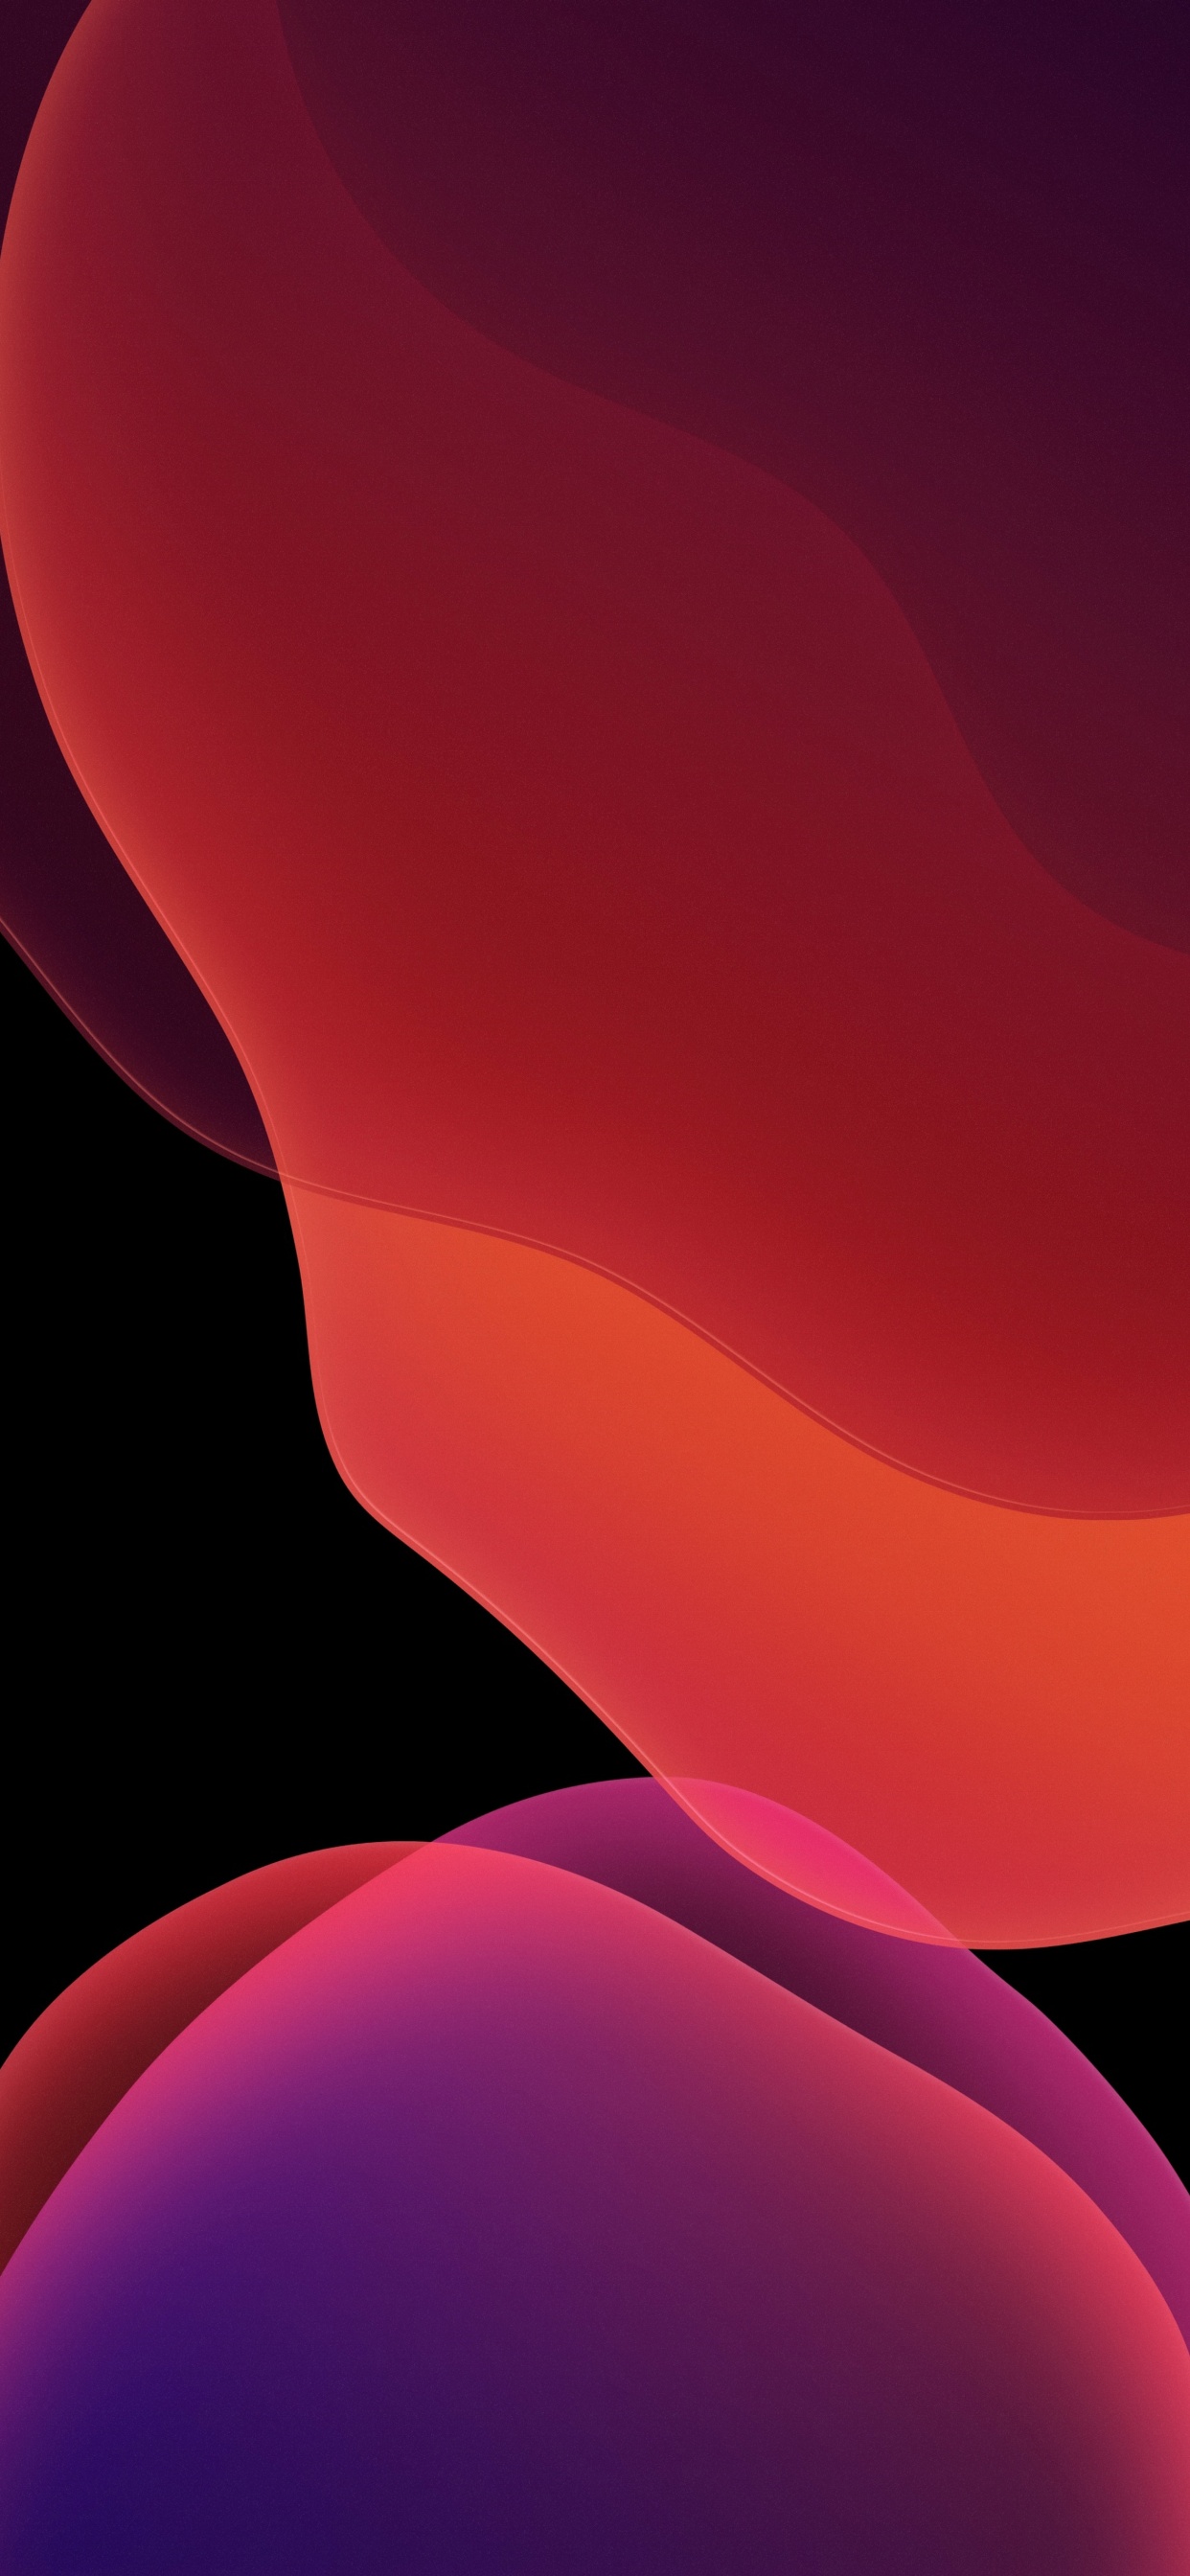 Đối với những người yêu thích thiết kế, iOS 13 Wallpaper là lựa chọn hoàn hảo. Với độ phân giải 4k, thiết kế trừu tượng và đầy sắc màu, bạn sẽ có những trải nghiệm mới mẻ và tuyệt vời với hình nền iPadOS và Red.